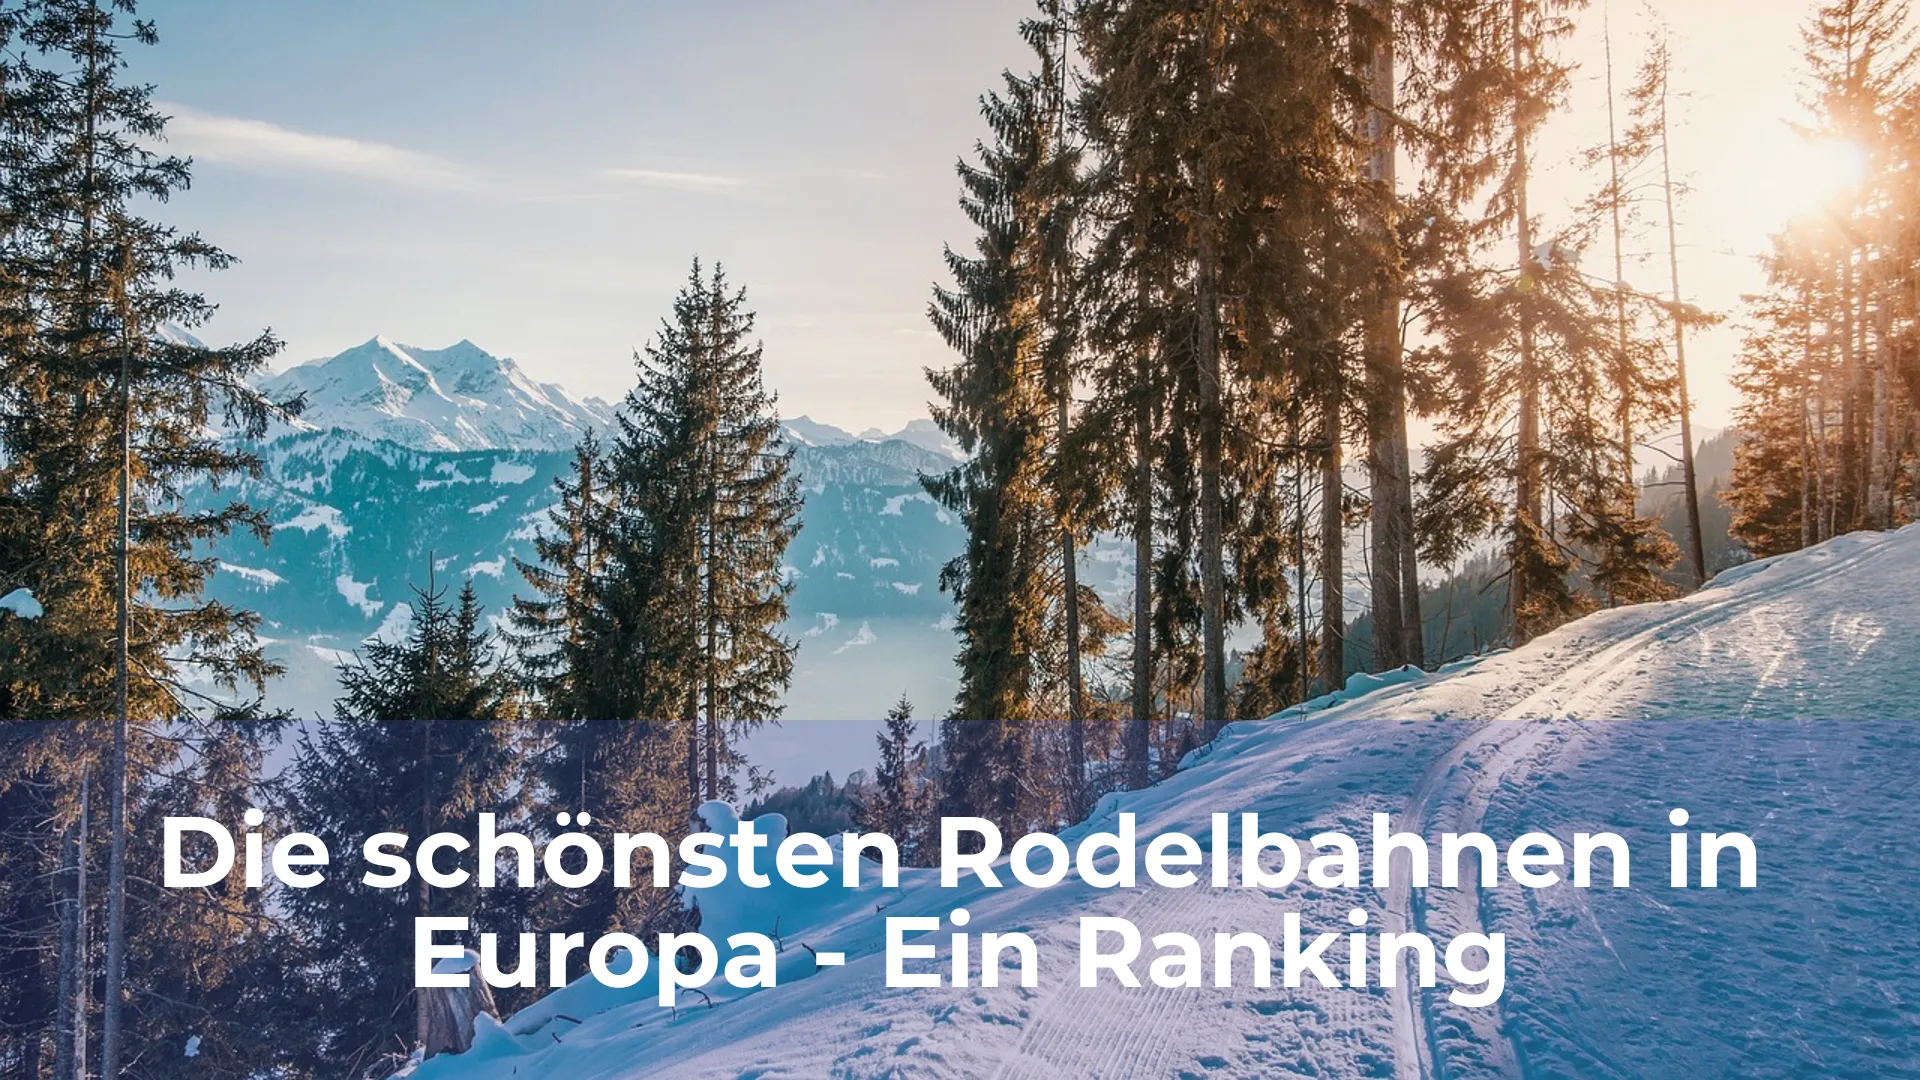 Die schönsten rodelbahnen in europa ein ranking